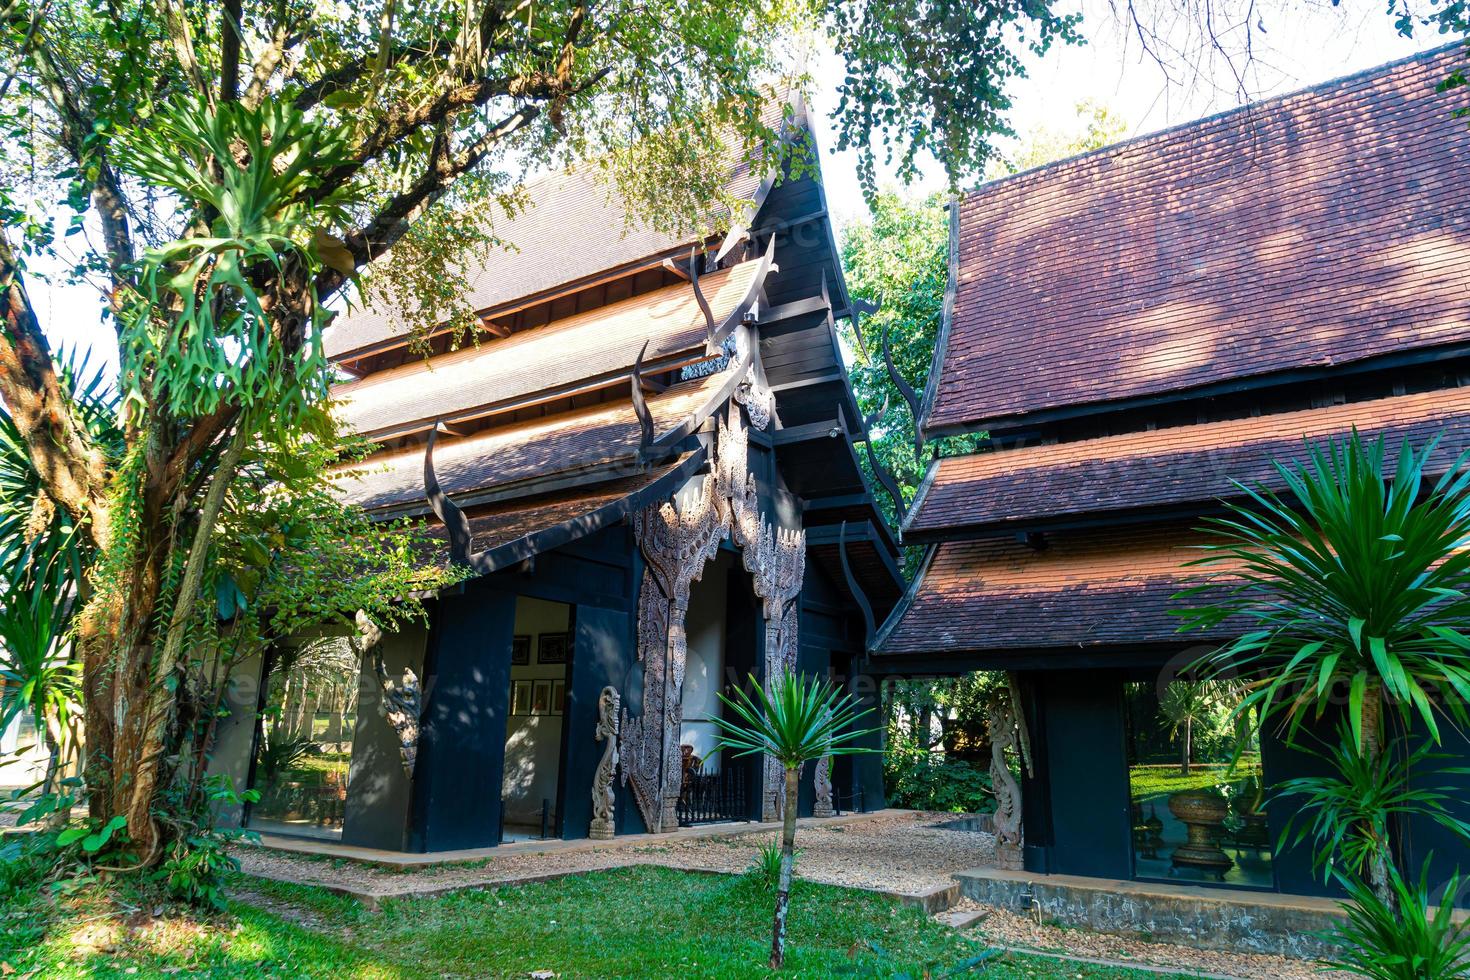 baan dam museum of zwart huis, een van de beroemd plaats en mijlpaal in Chiang rai foto